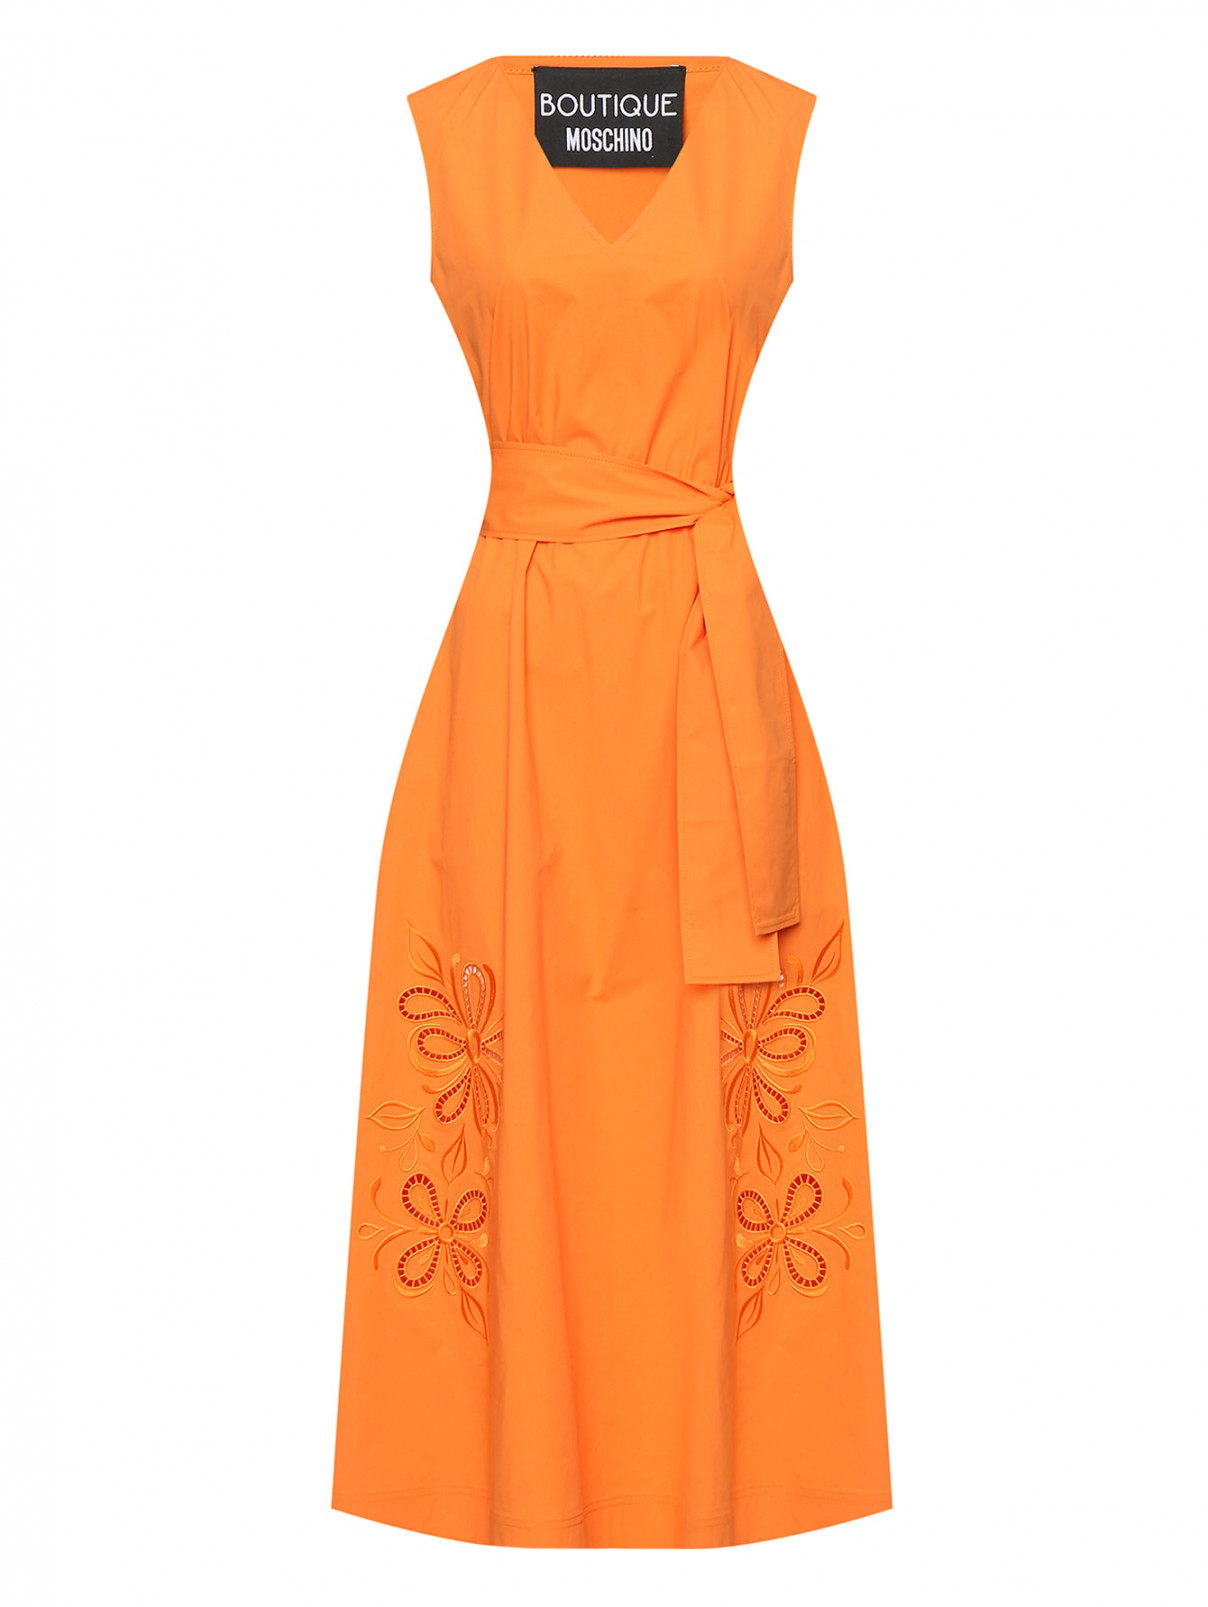 Платье из хлопка с вышивкой Moschino Boutique  –  Общий вид  – Цвет:  Оранжевый